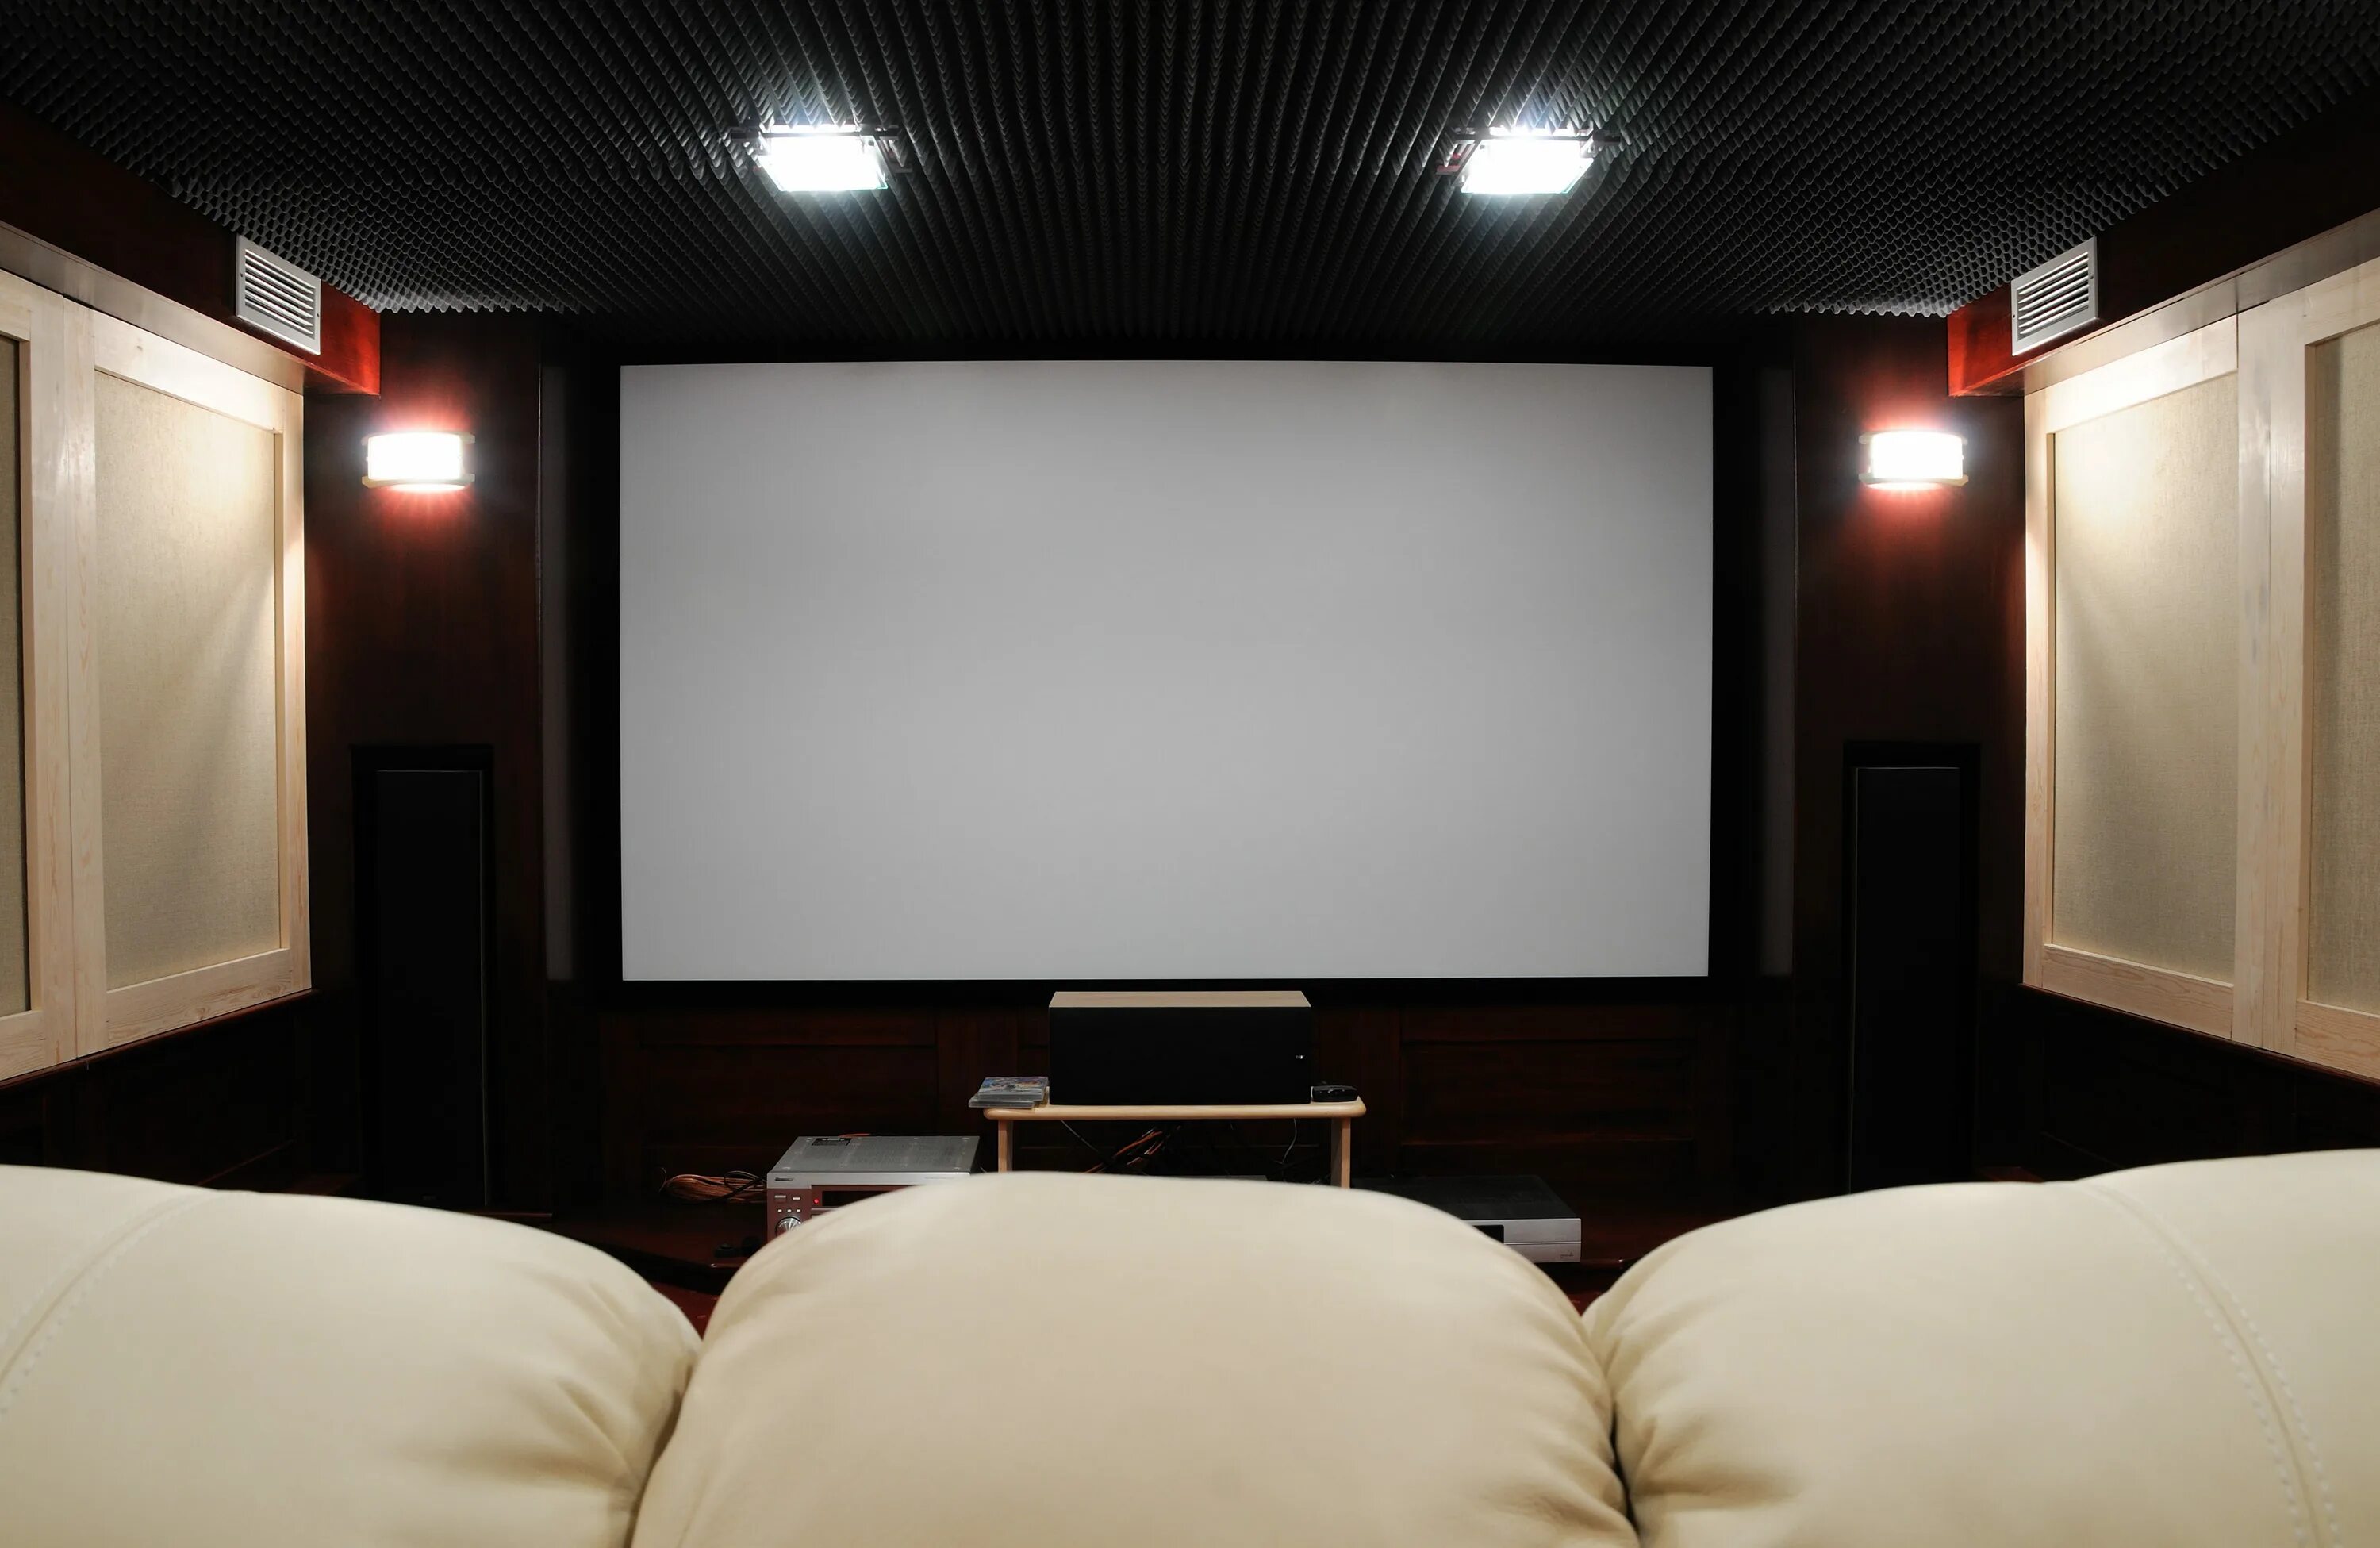 Кинотеатр для домашнего просмотра. Экран для домашнего кинотеатра. Домашний кинотеатр. Экран для проектора в интерьере. Экран кинотеатра.